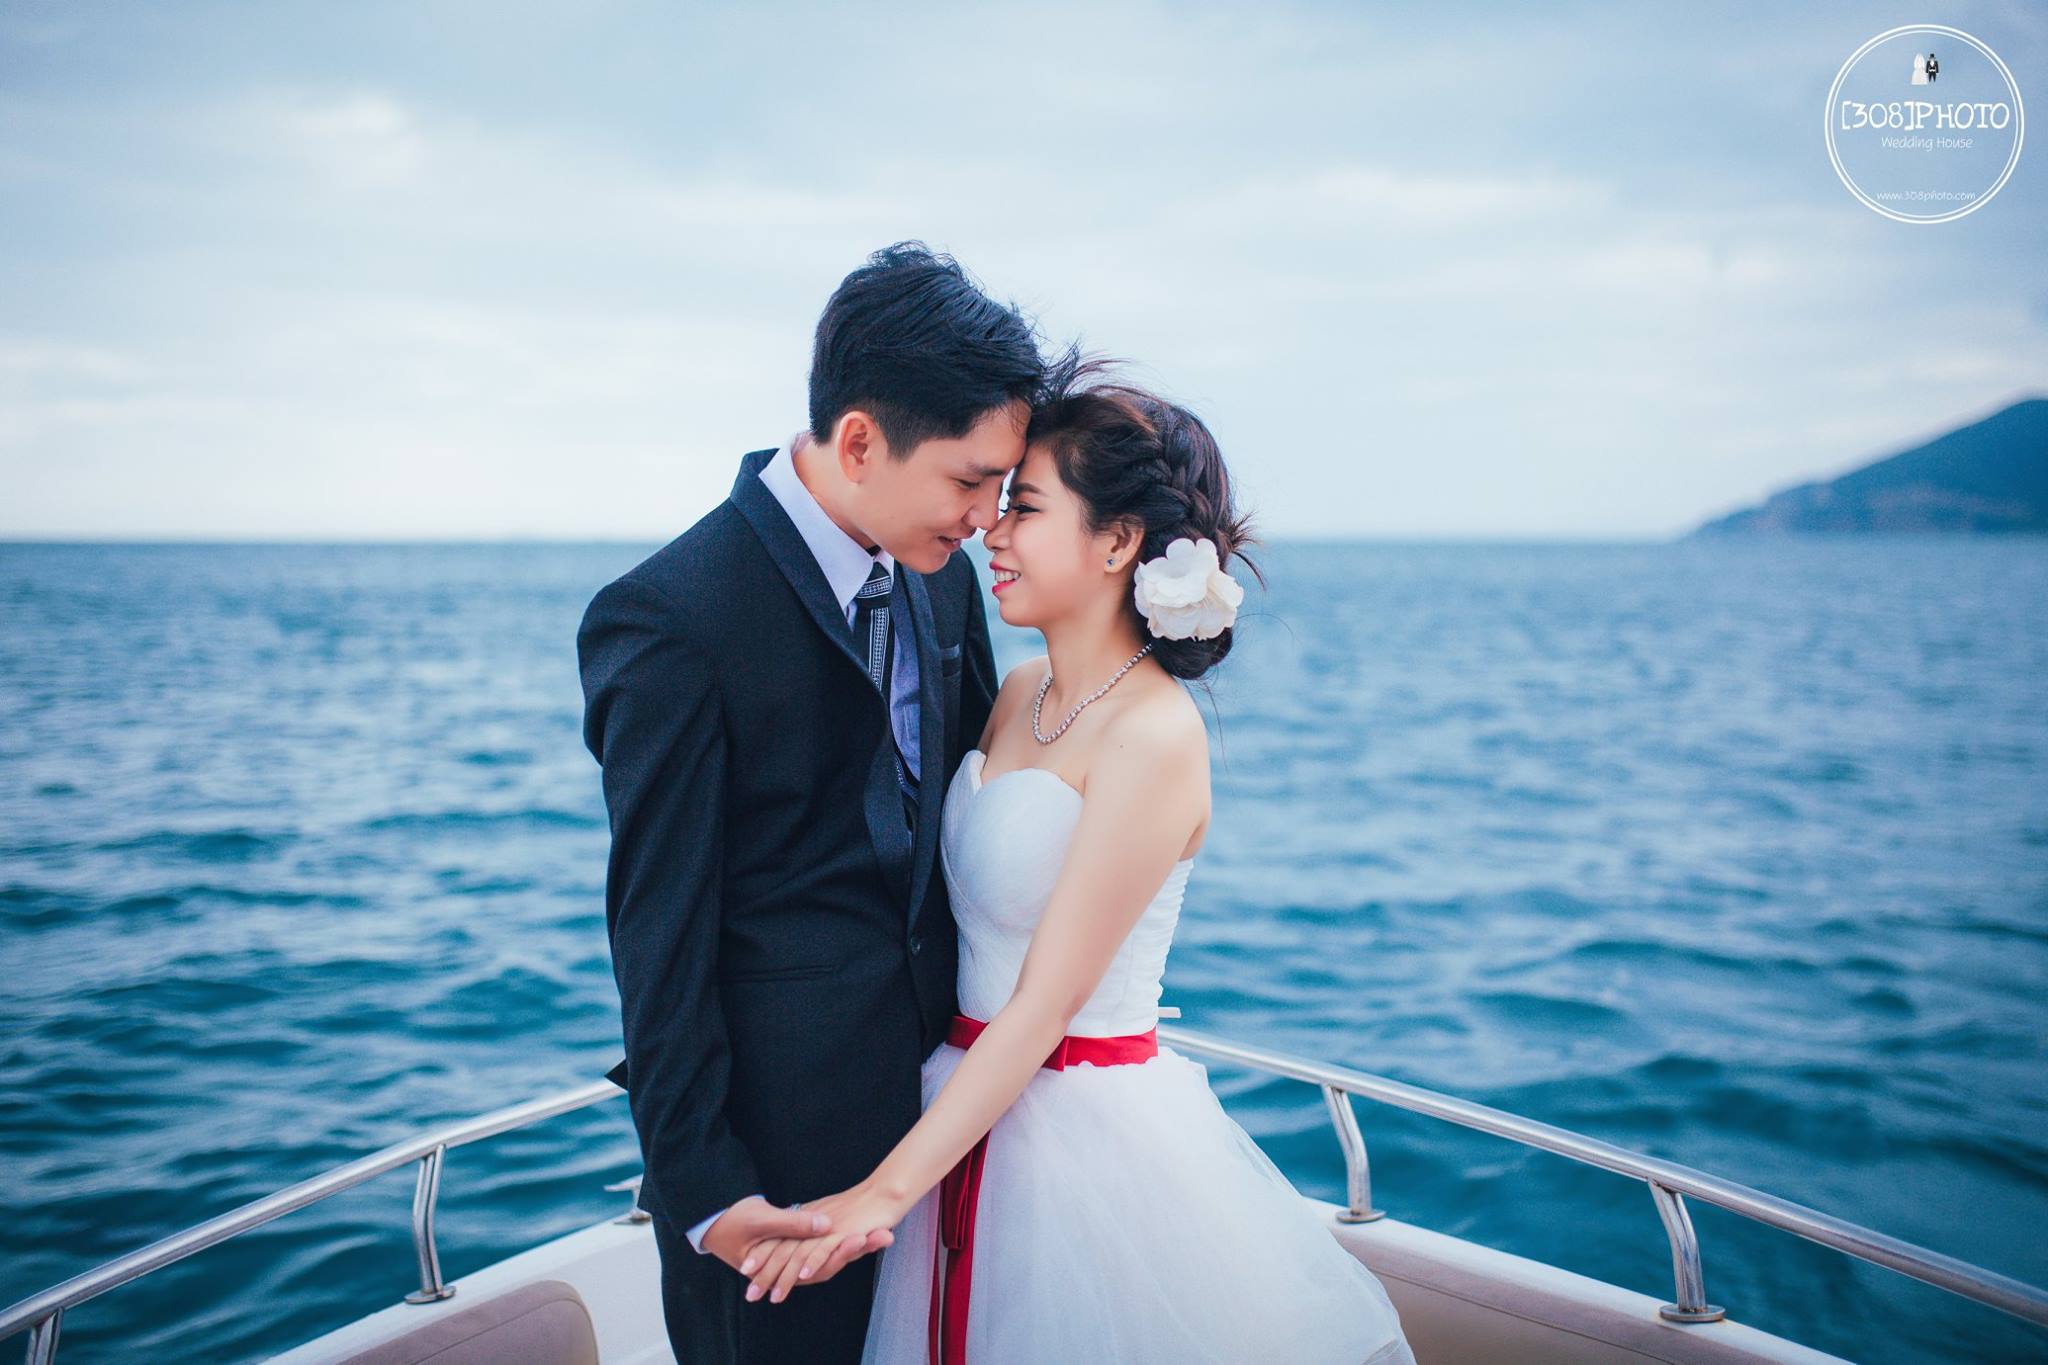 [308]Photo - Ảnh cưới đẹp Nha Trang